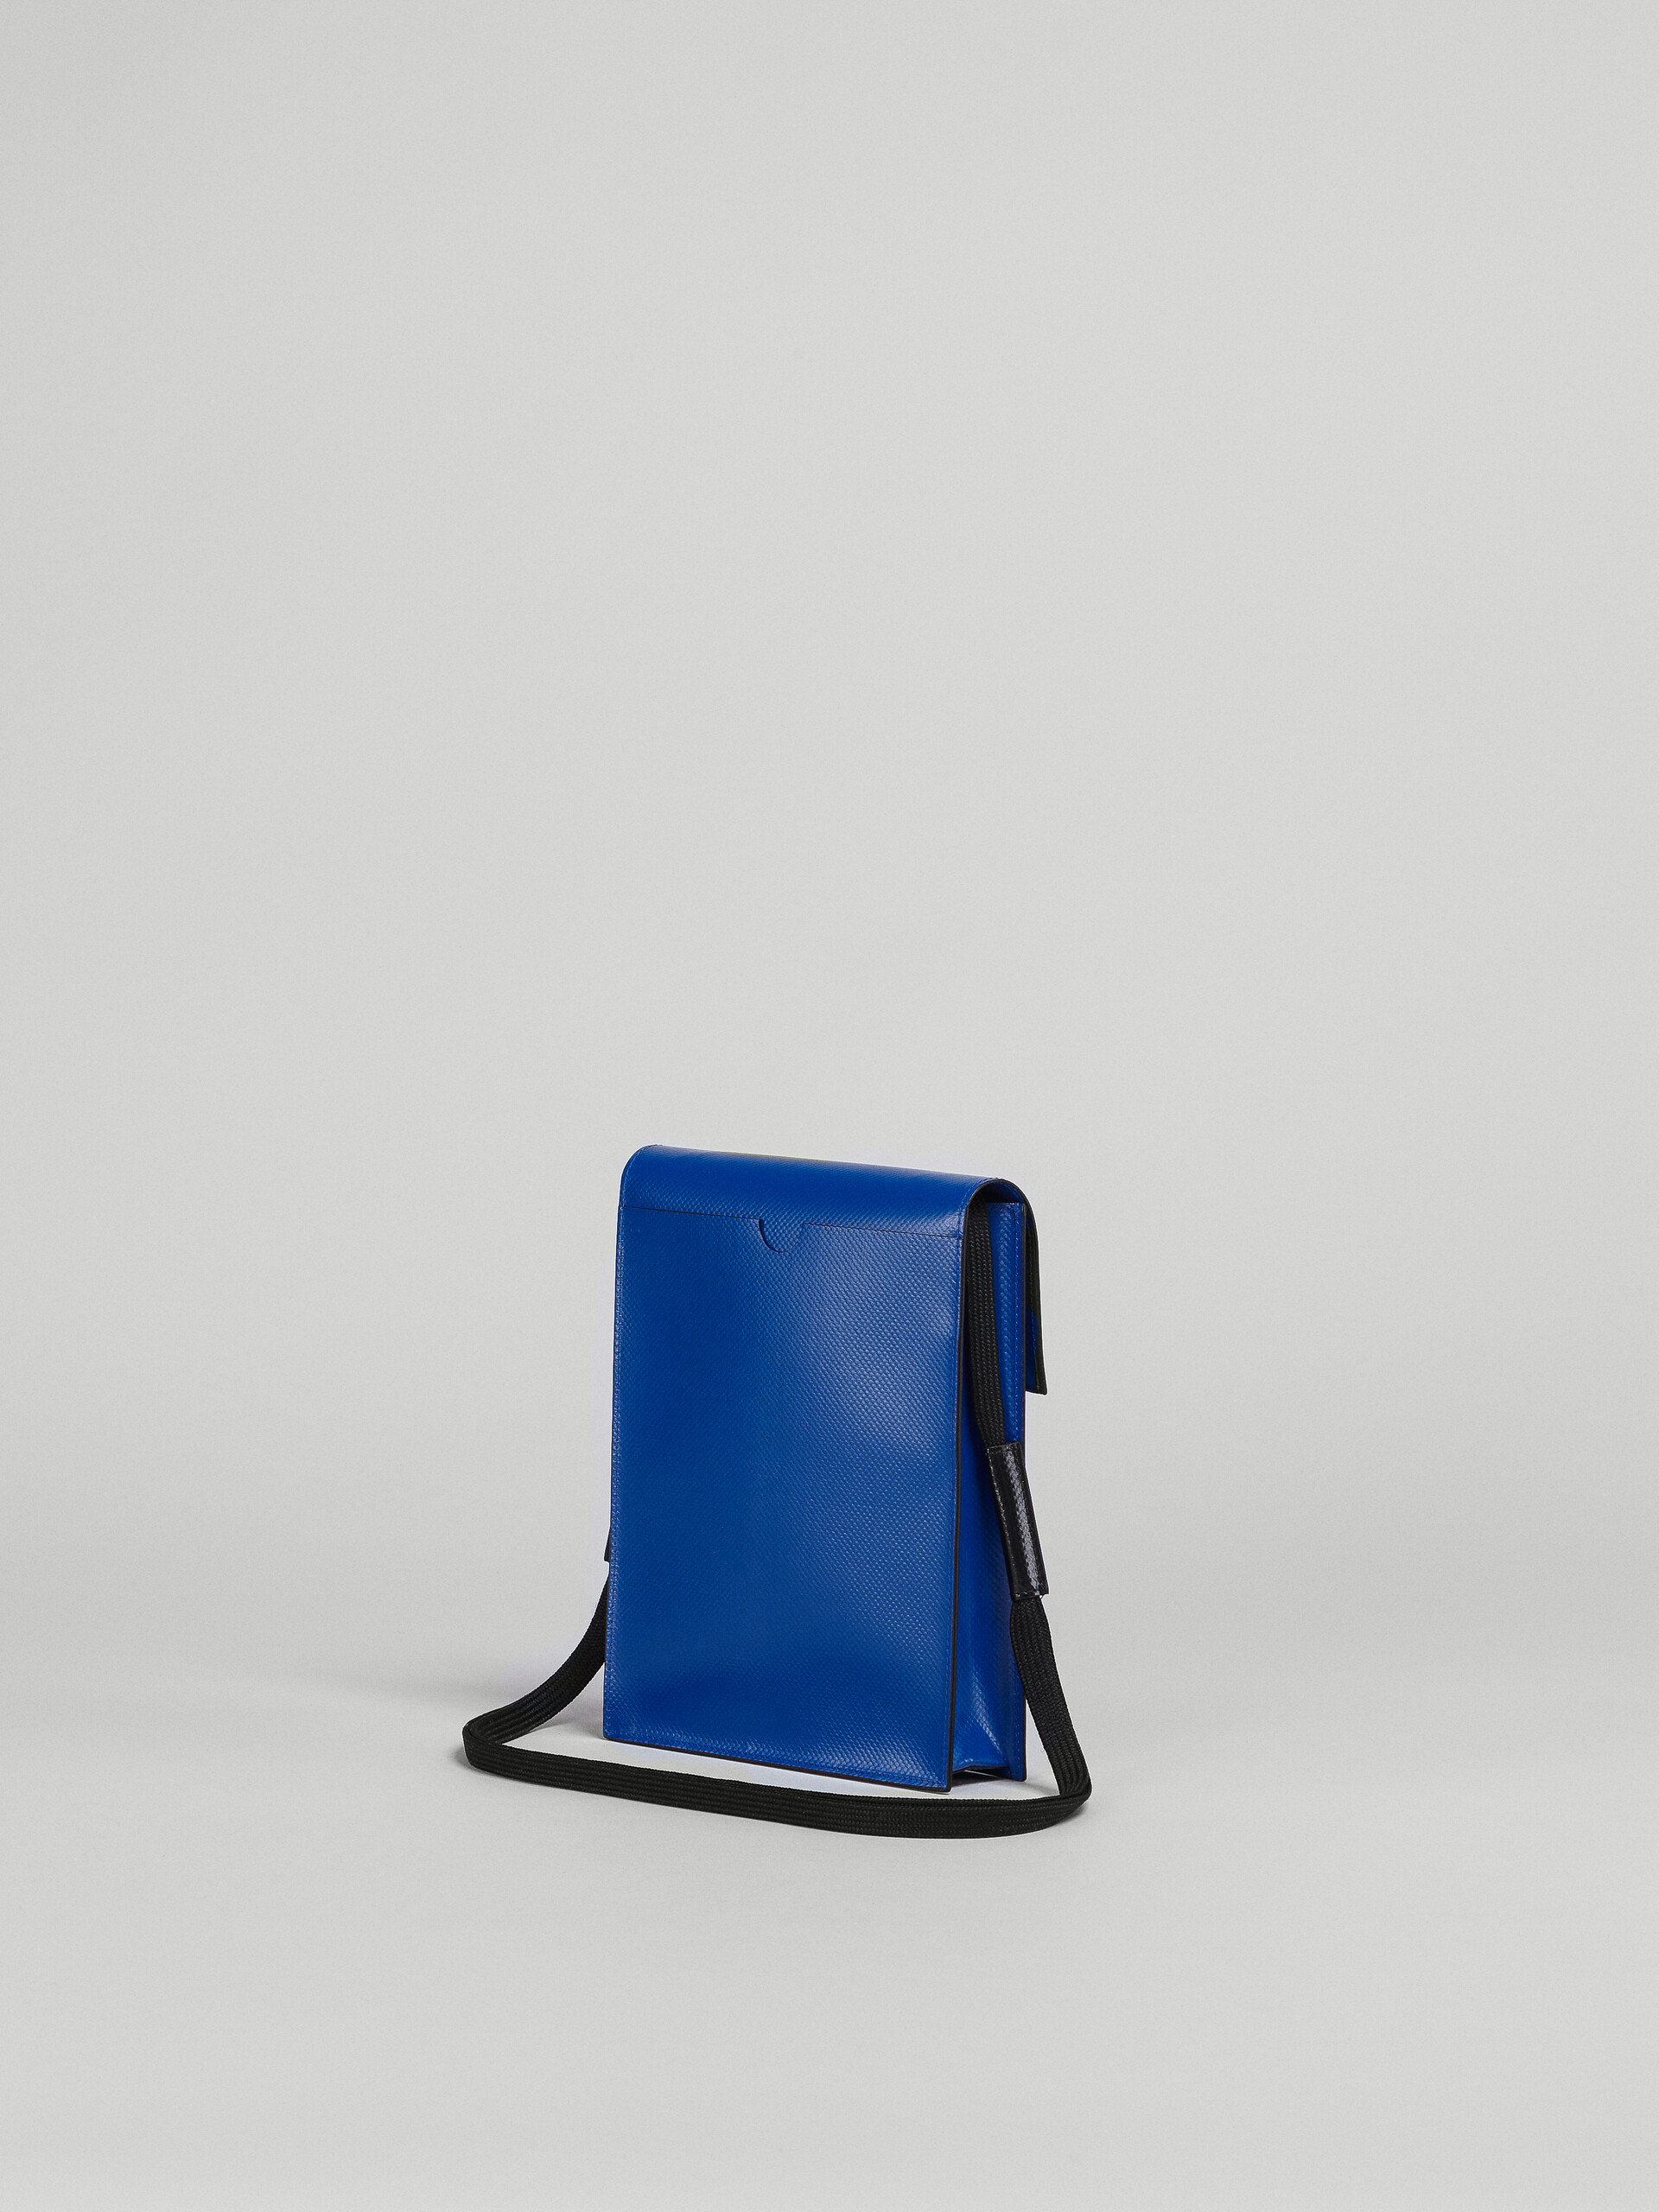 Blue and black TRIBECA shoulder bag - Shoulder Bag - Image 3